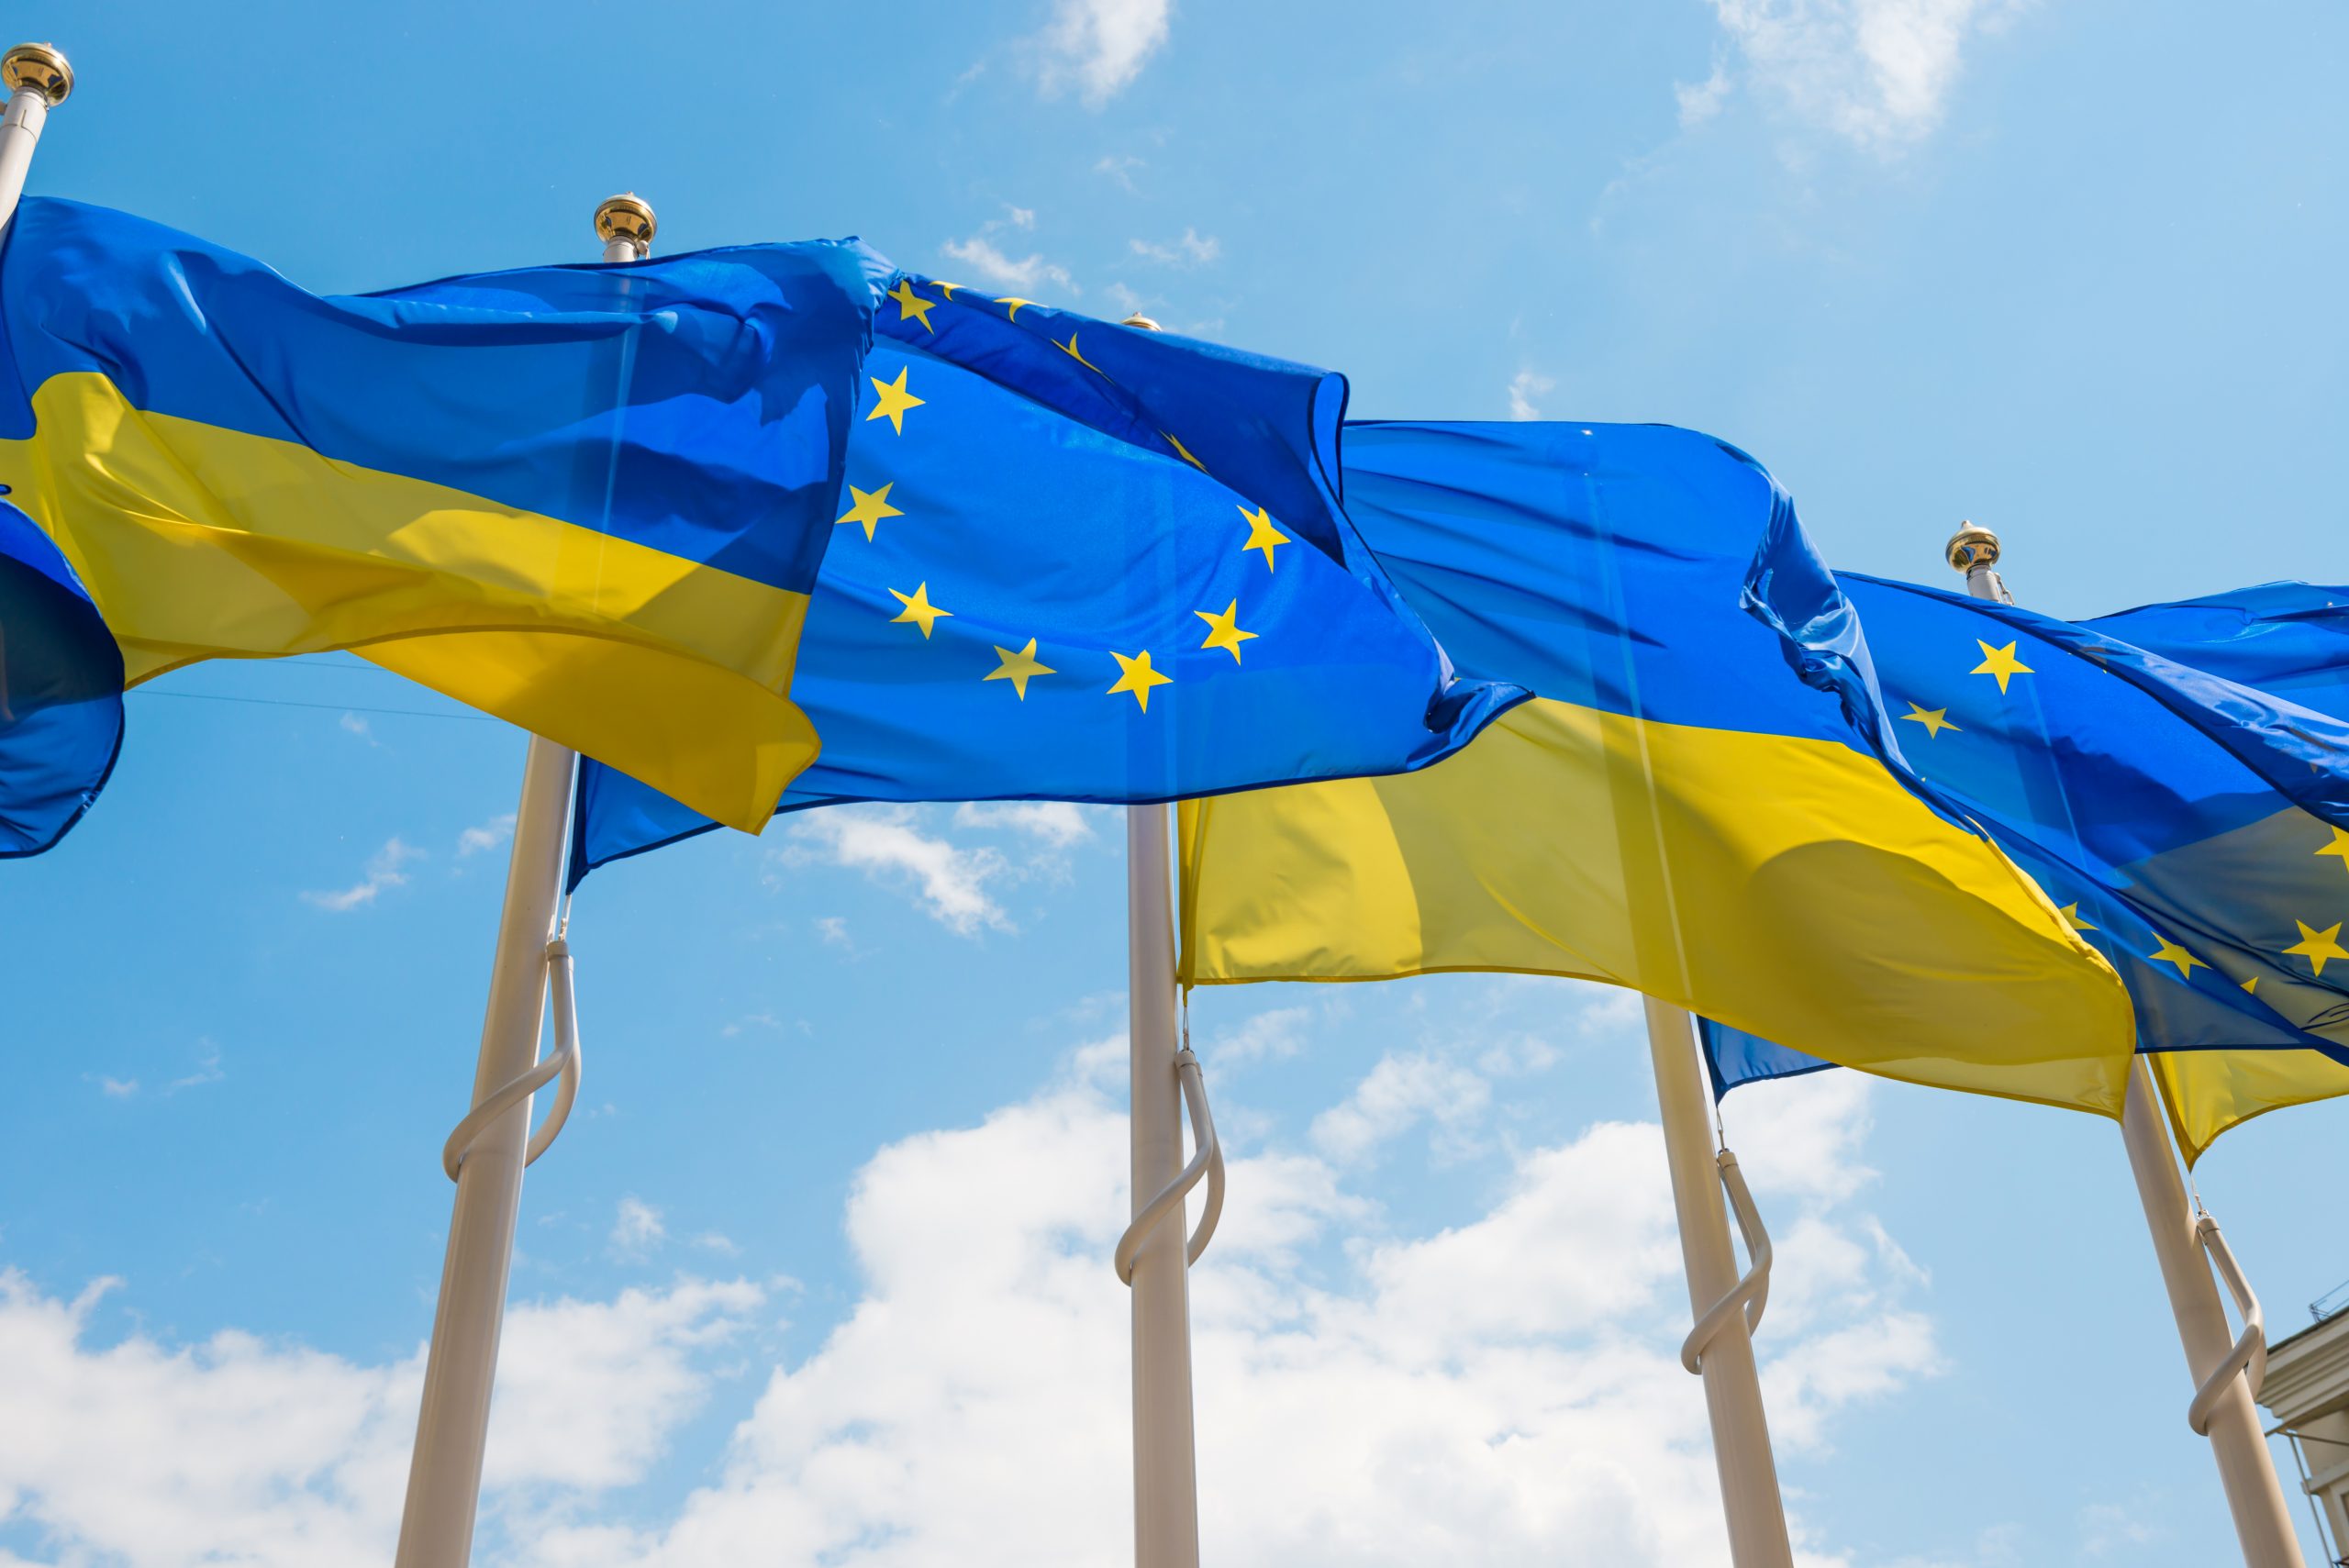 Άνοιξε την πόρτα της στην Ουκρανία η ΕΕ, αλλά χωρίς οικονομική βοήθεια